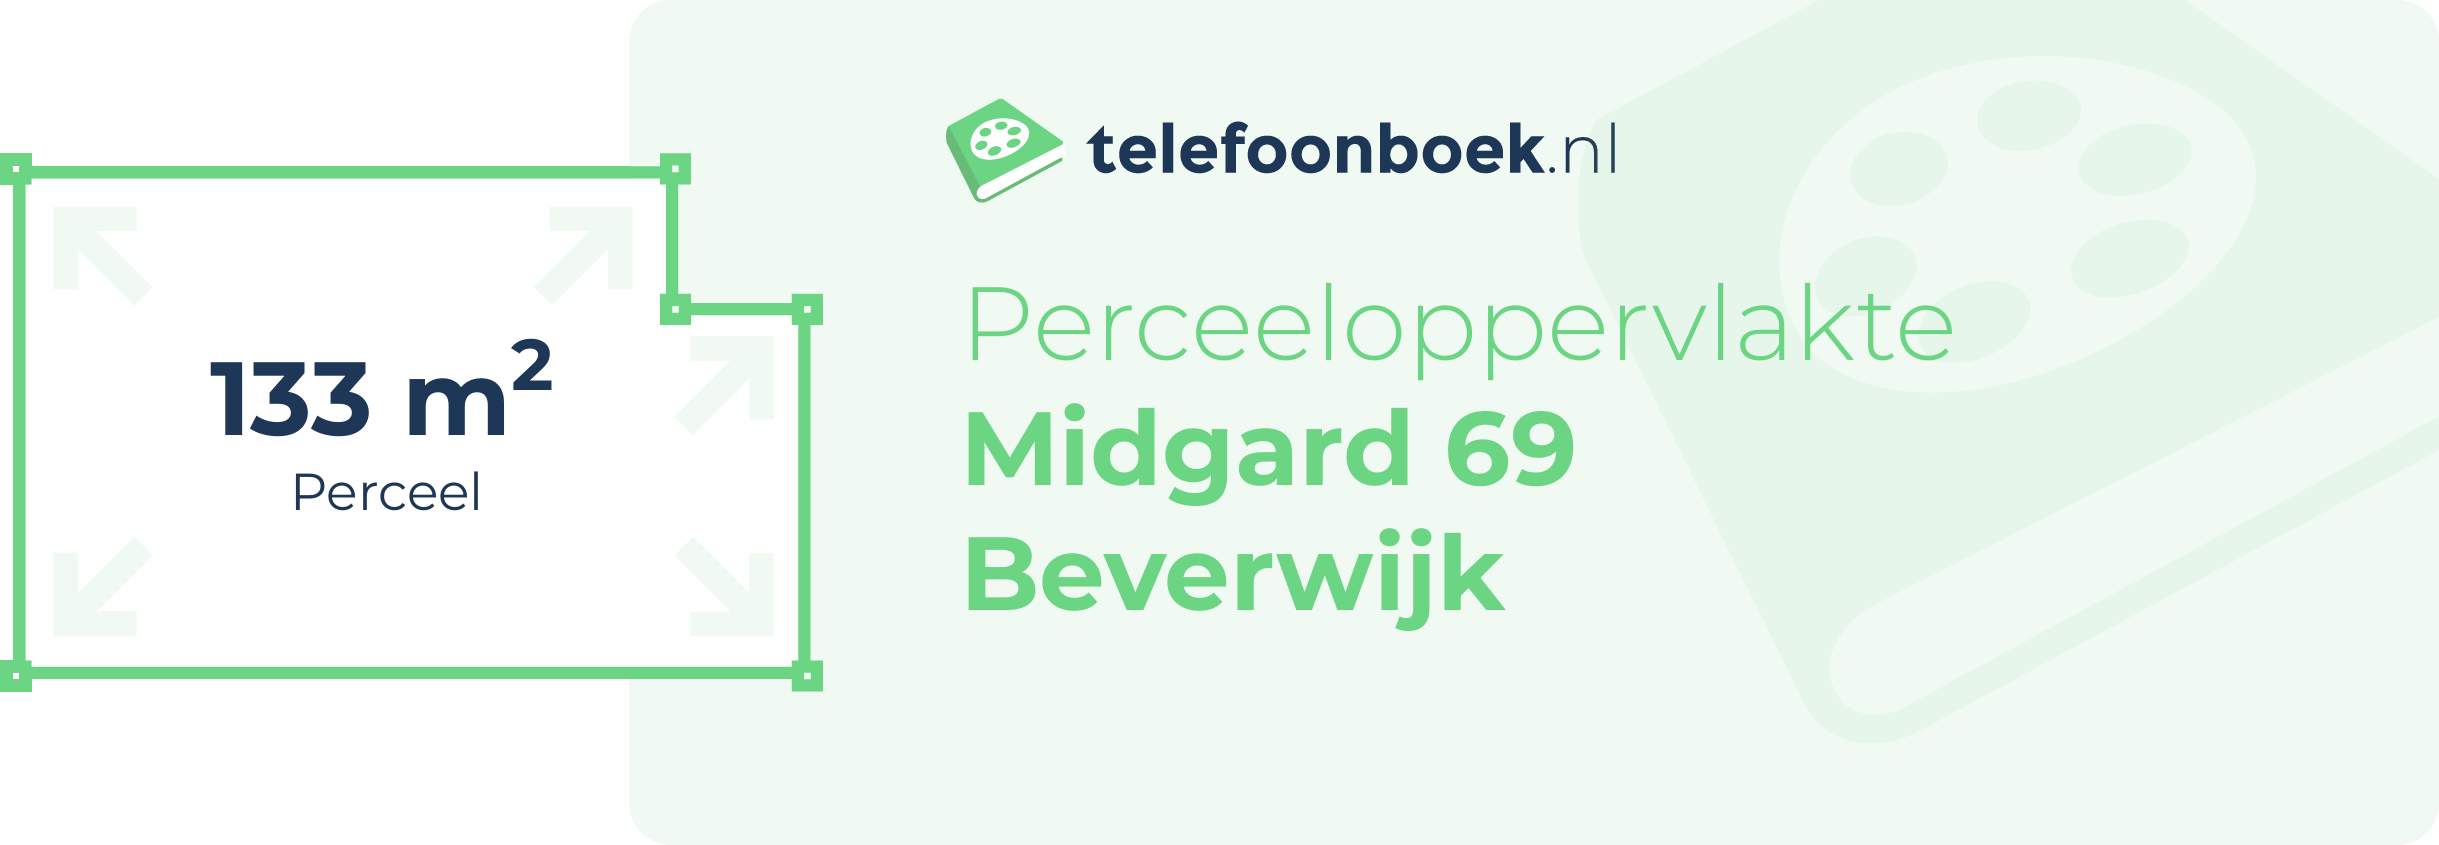 Perceeloppervlakte Midgard 69 Beverwijk